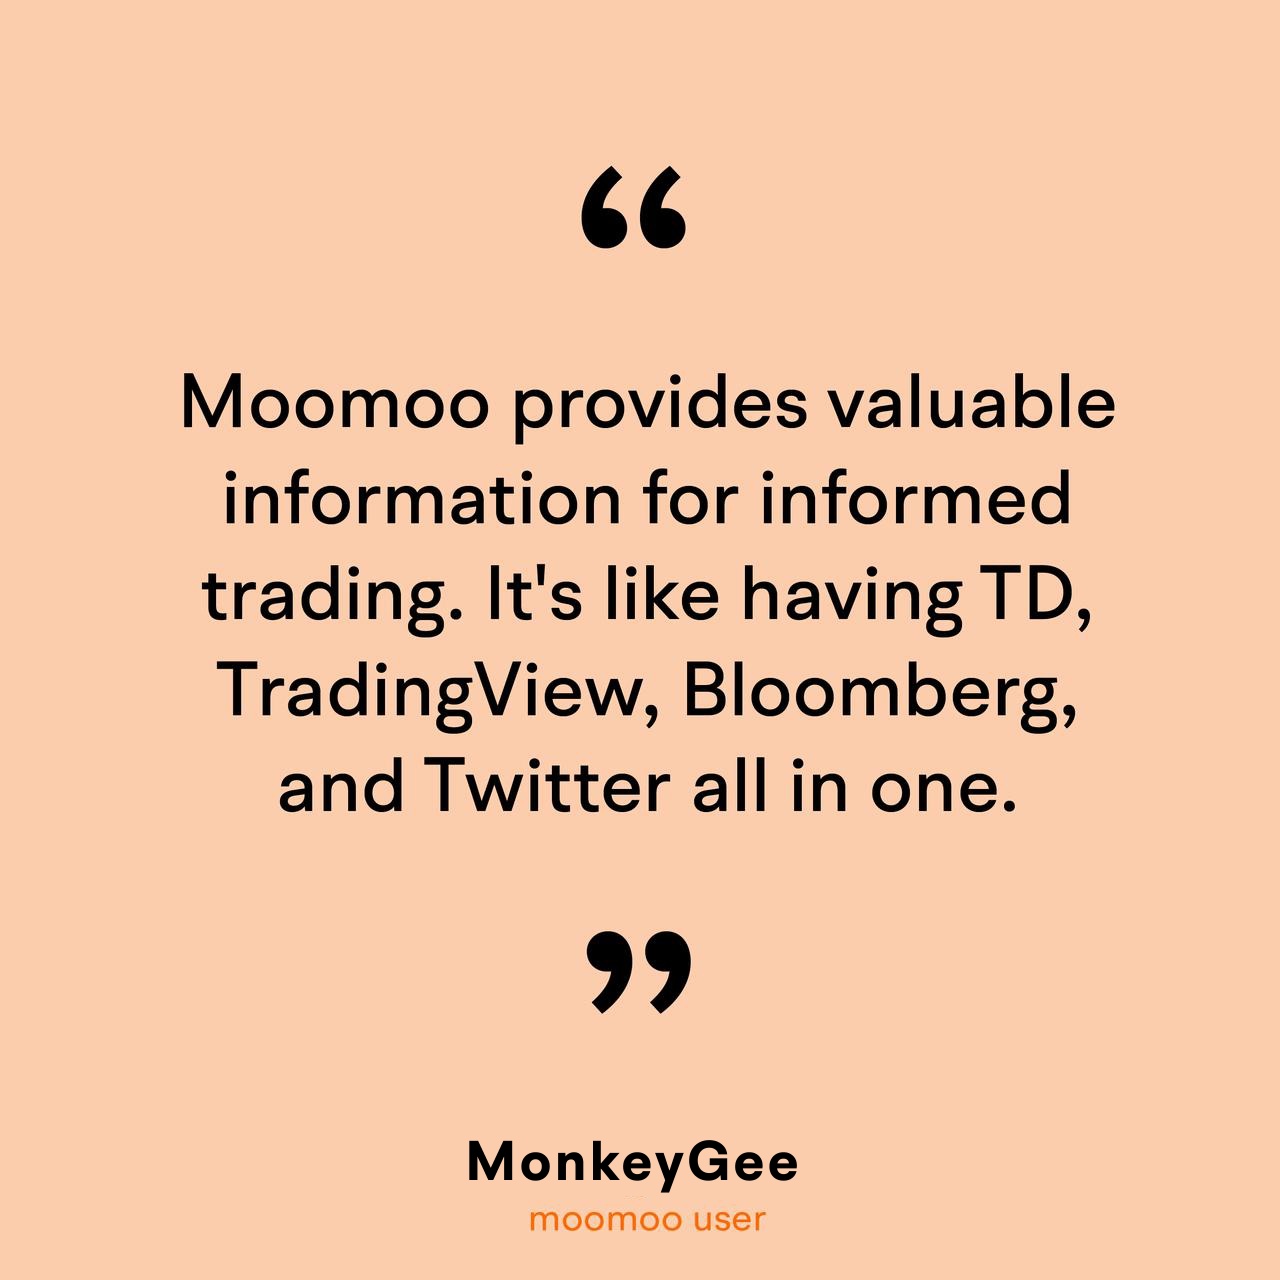 摩尔斯的故事 | 为什么 @MonkeyGee 用 “冲动投资” 来创造长期财富